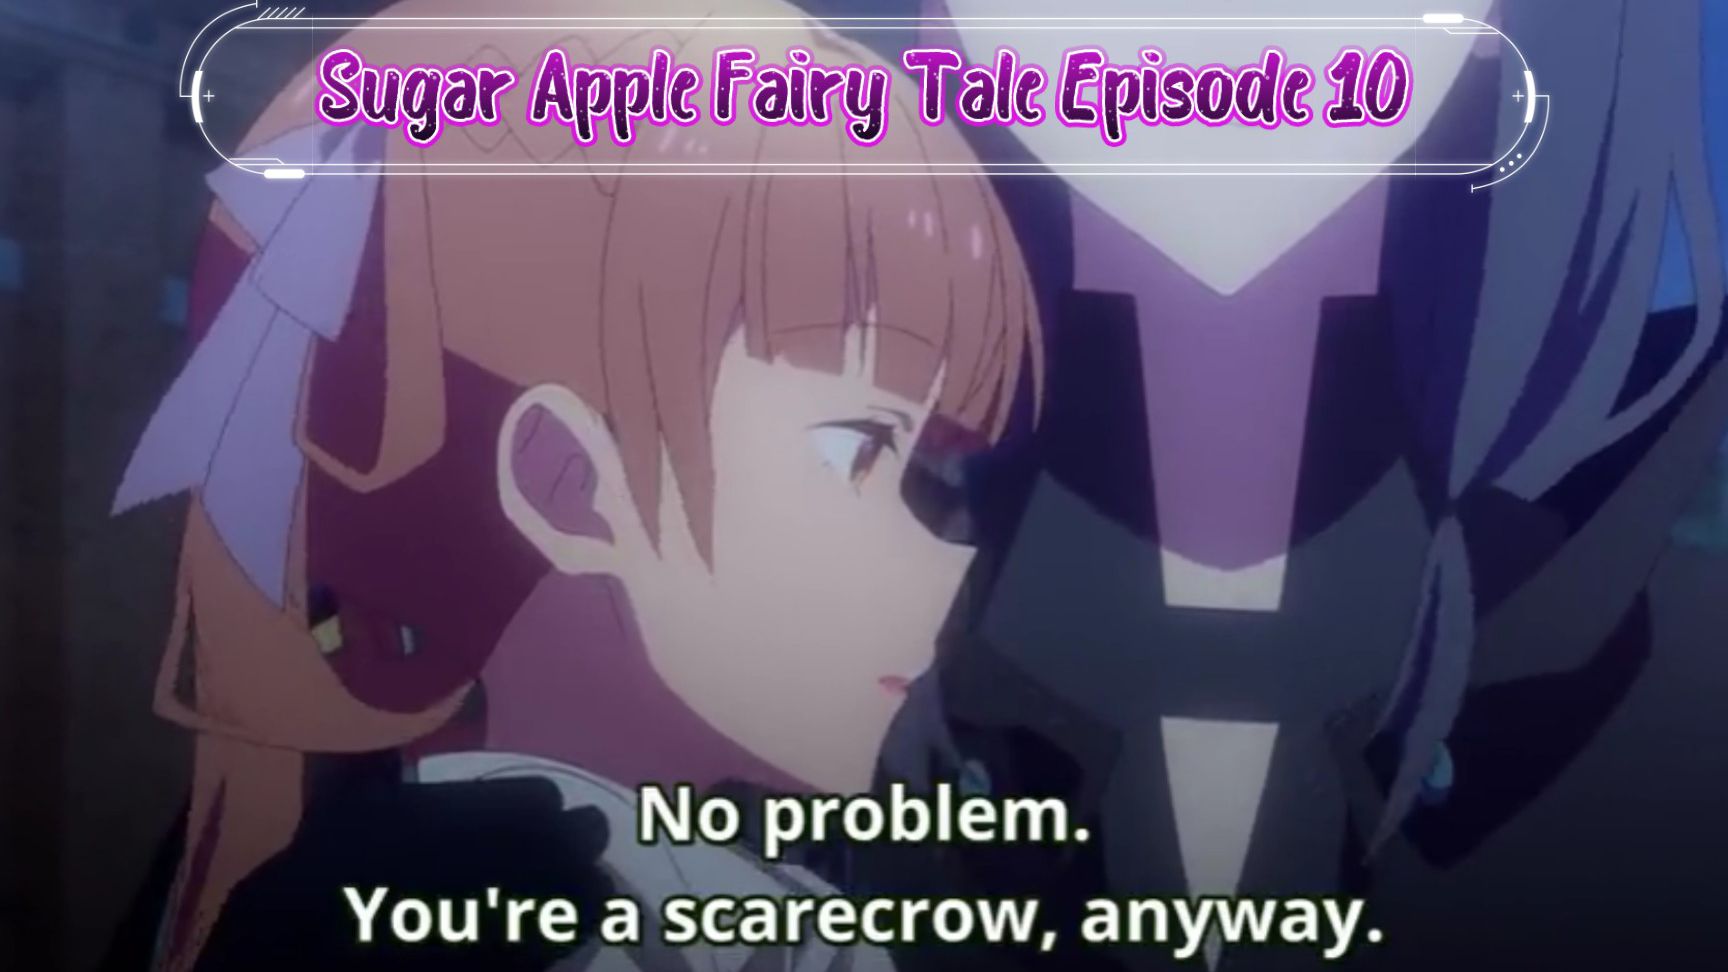 Sugar Apple Fairy Tale Episode 2